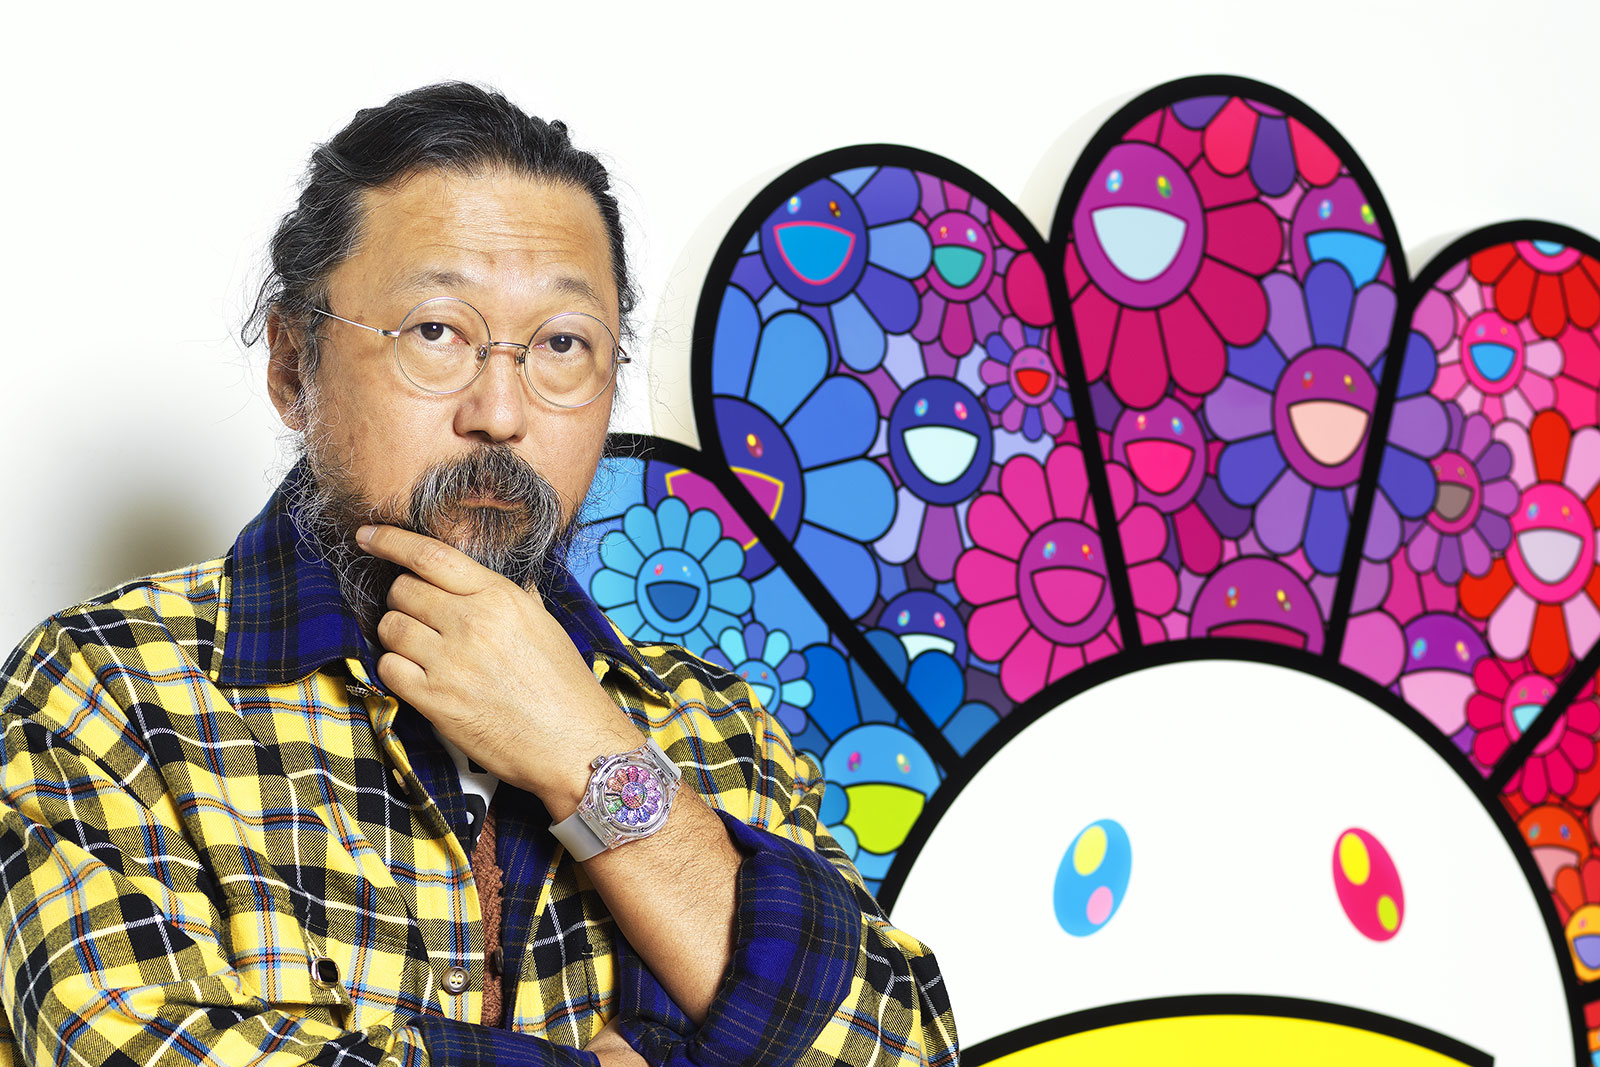 Hublot's New Takashi Murakami Watch Goes Full Flower Power